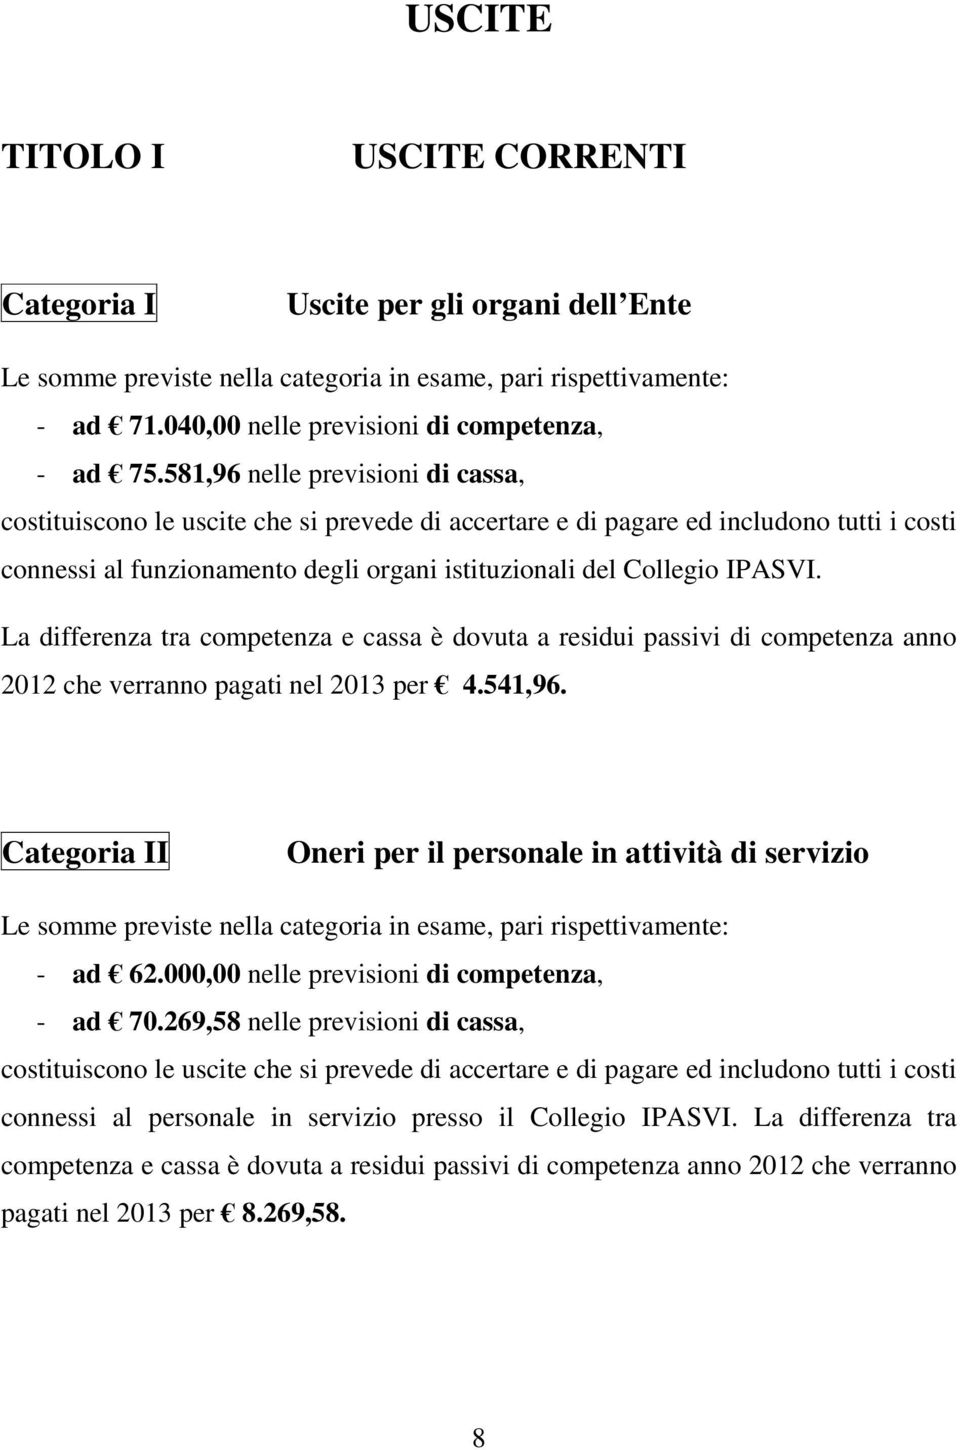 La differenza tra competenza e cassa è dovuta a residui passivi di competenza anno 2012 che verranno pagati nel 2013 per 4.541,96.